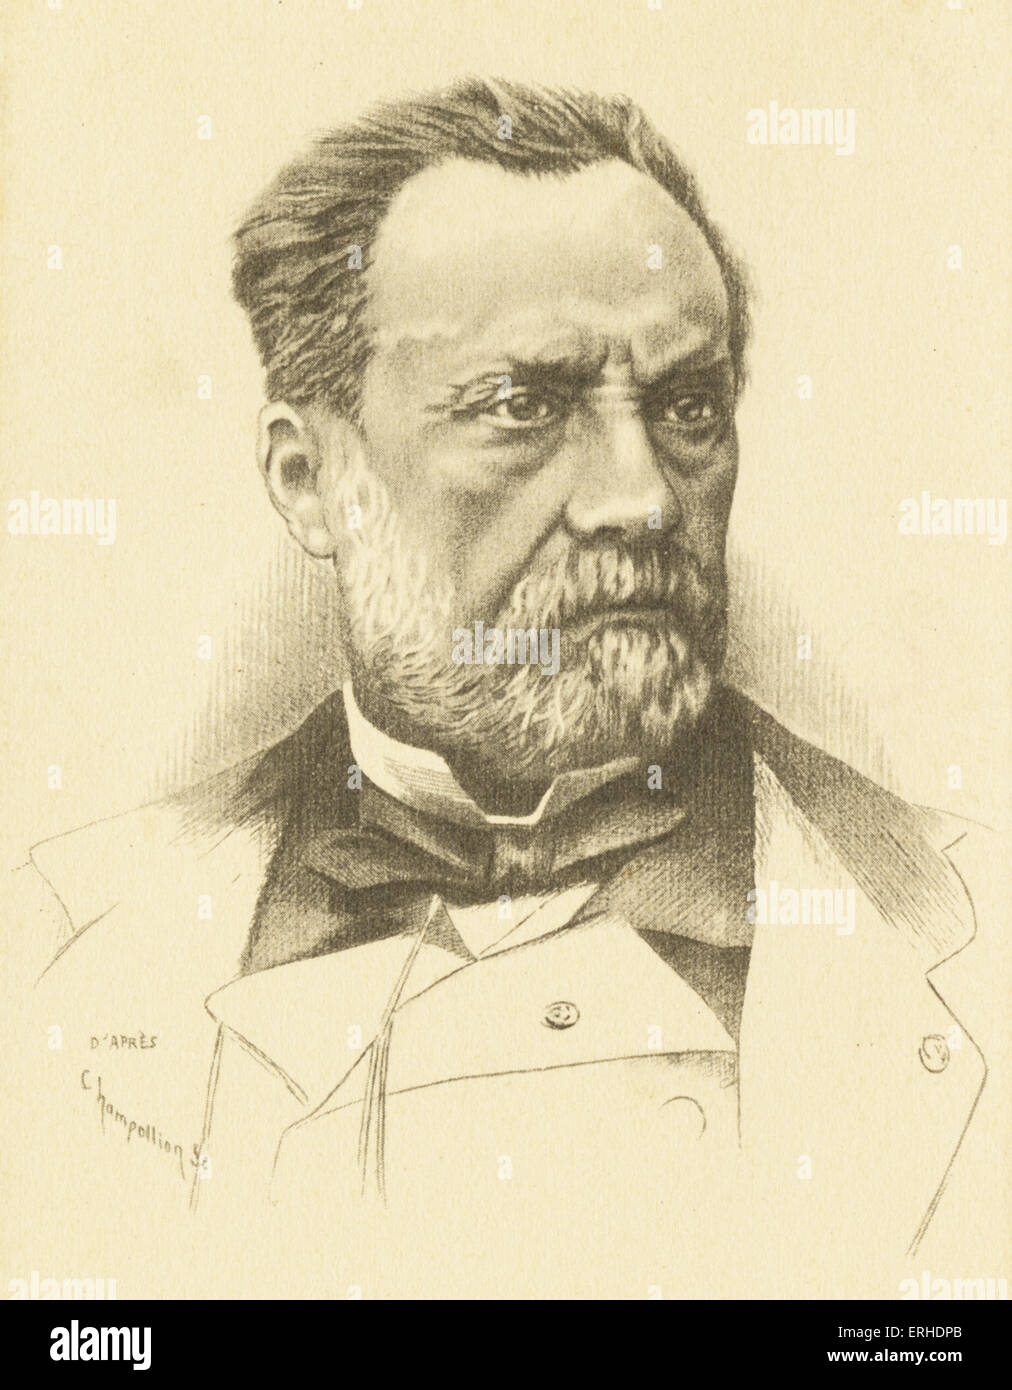 Louis Pasteur, Porträt, französischer Wissenschaftler 1822-1895, Erfinder des Verfahrens der Pasteurisierung und Beschaffung von Impfstoffen Stockfoto